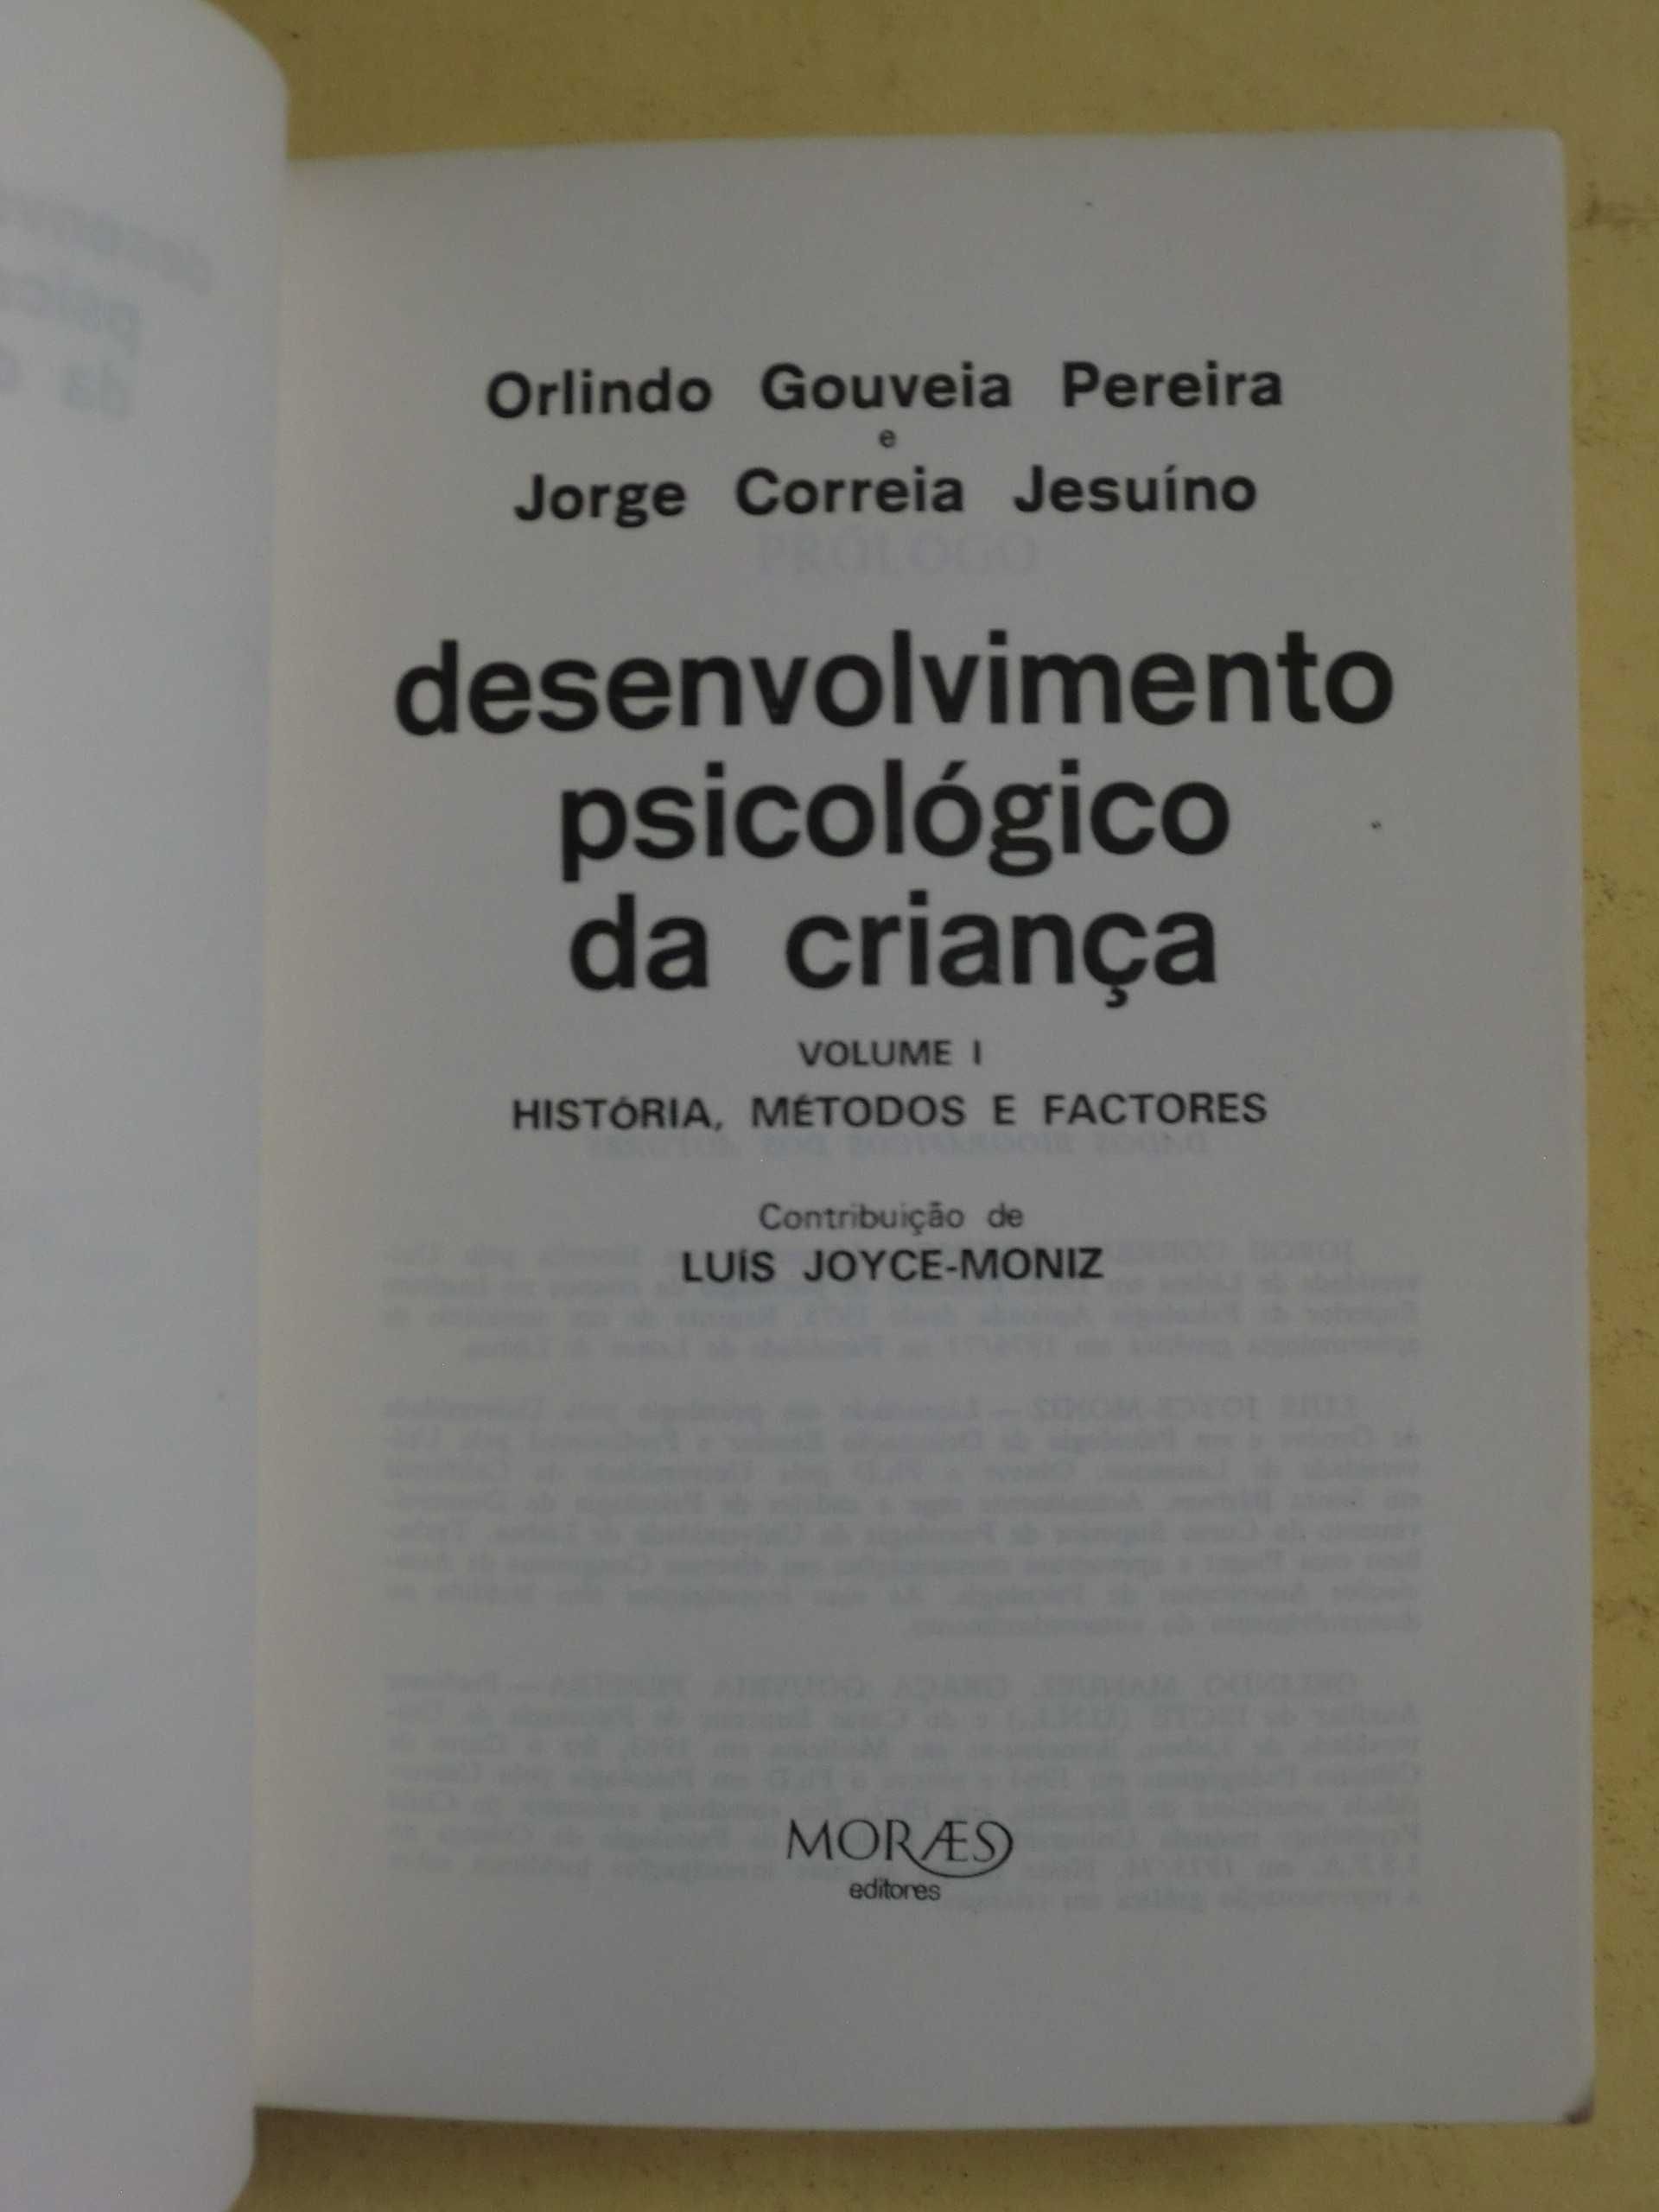 Desenvolvimento Psicológico da criança 
de Orlindo Gouveia Pereira